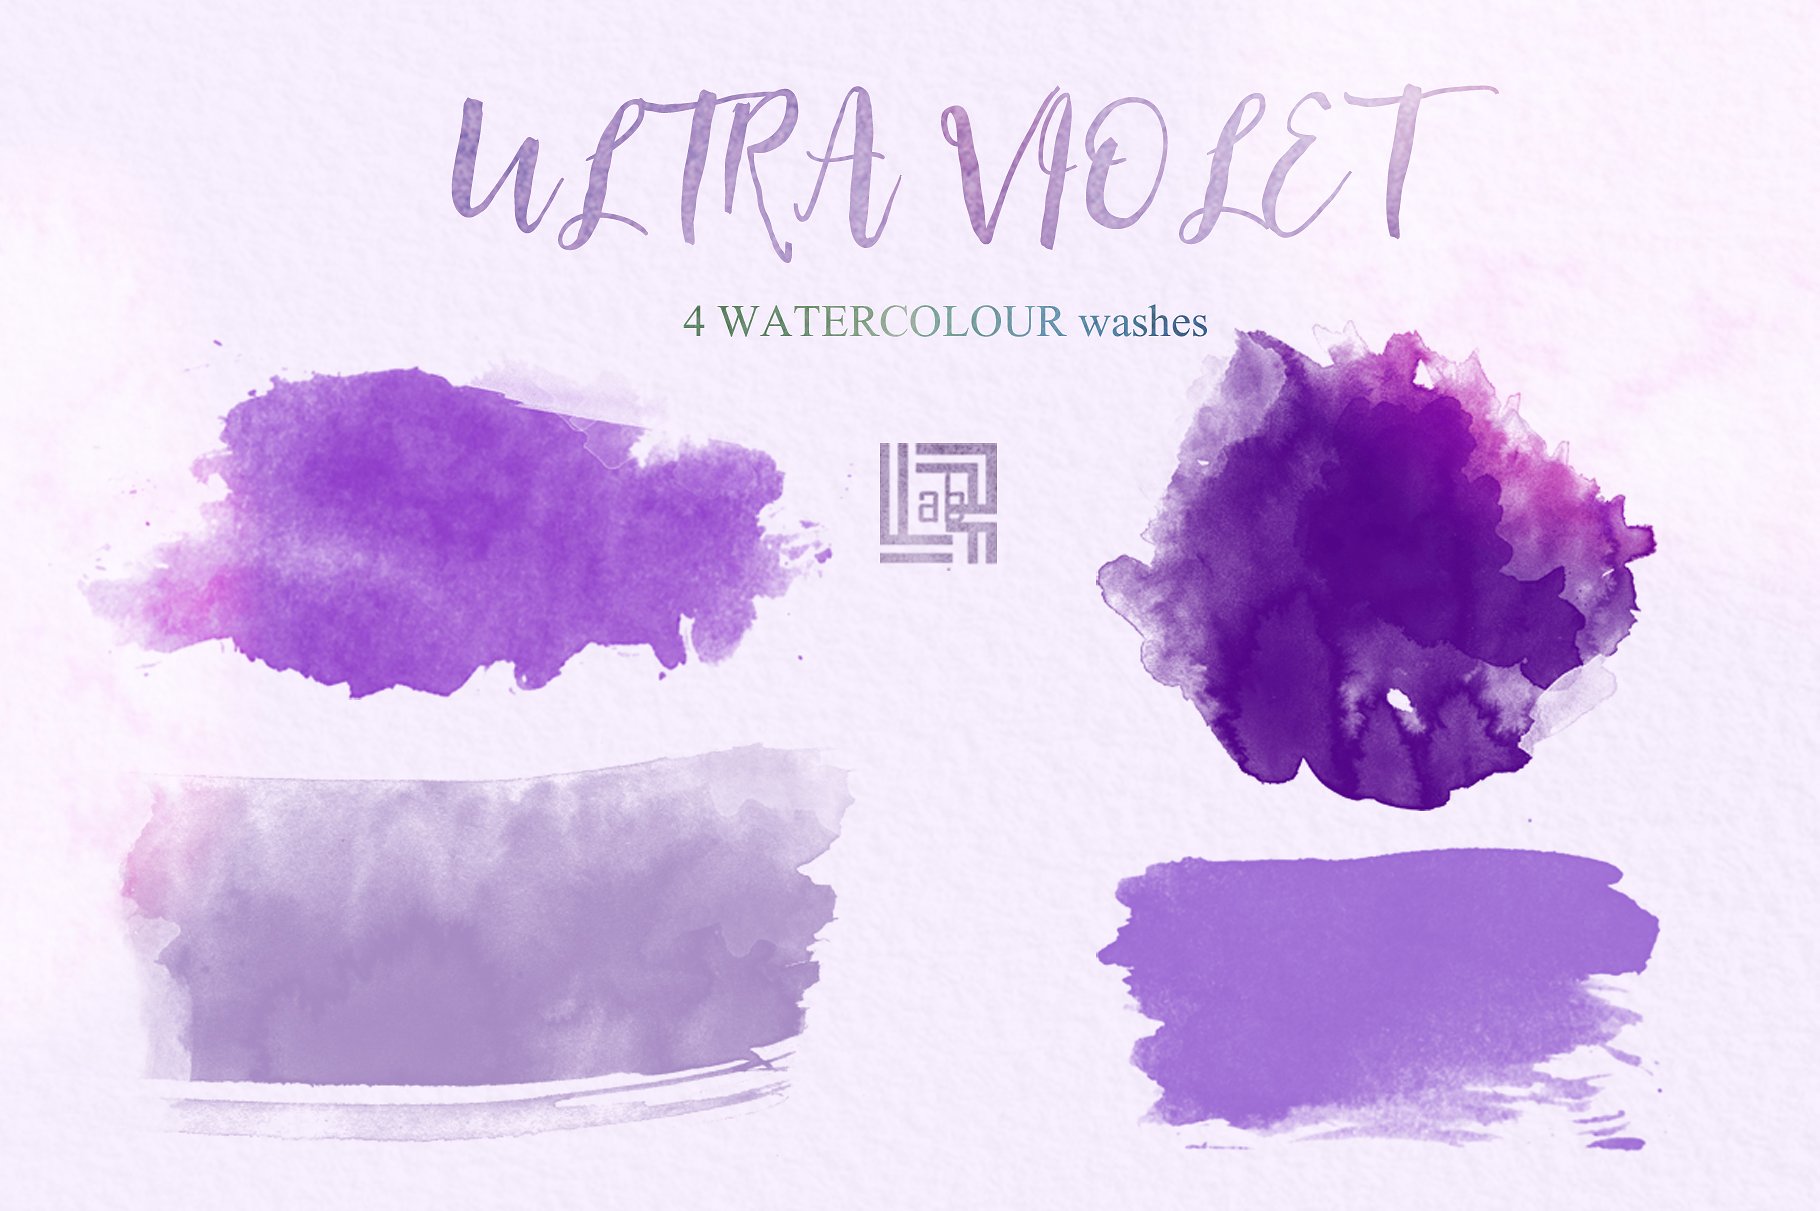 手绘水彩紫色花卉植物设计素材Ultraviolet wate